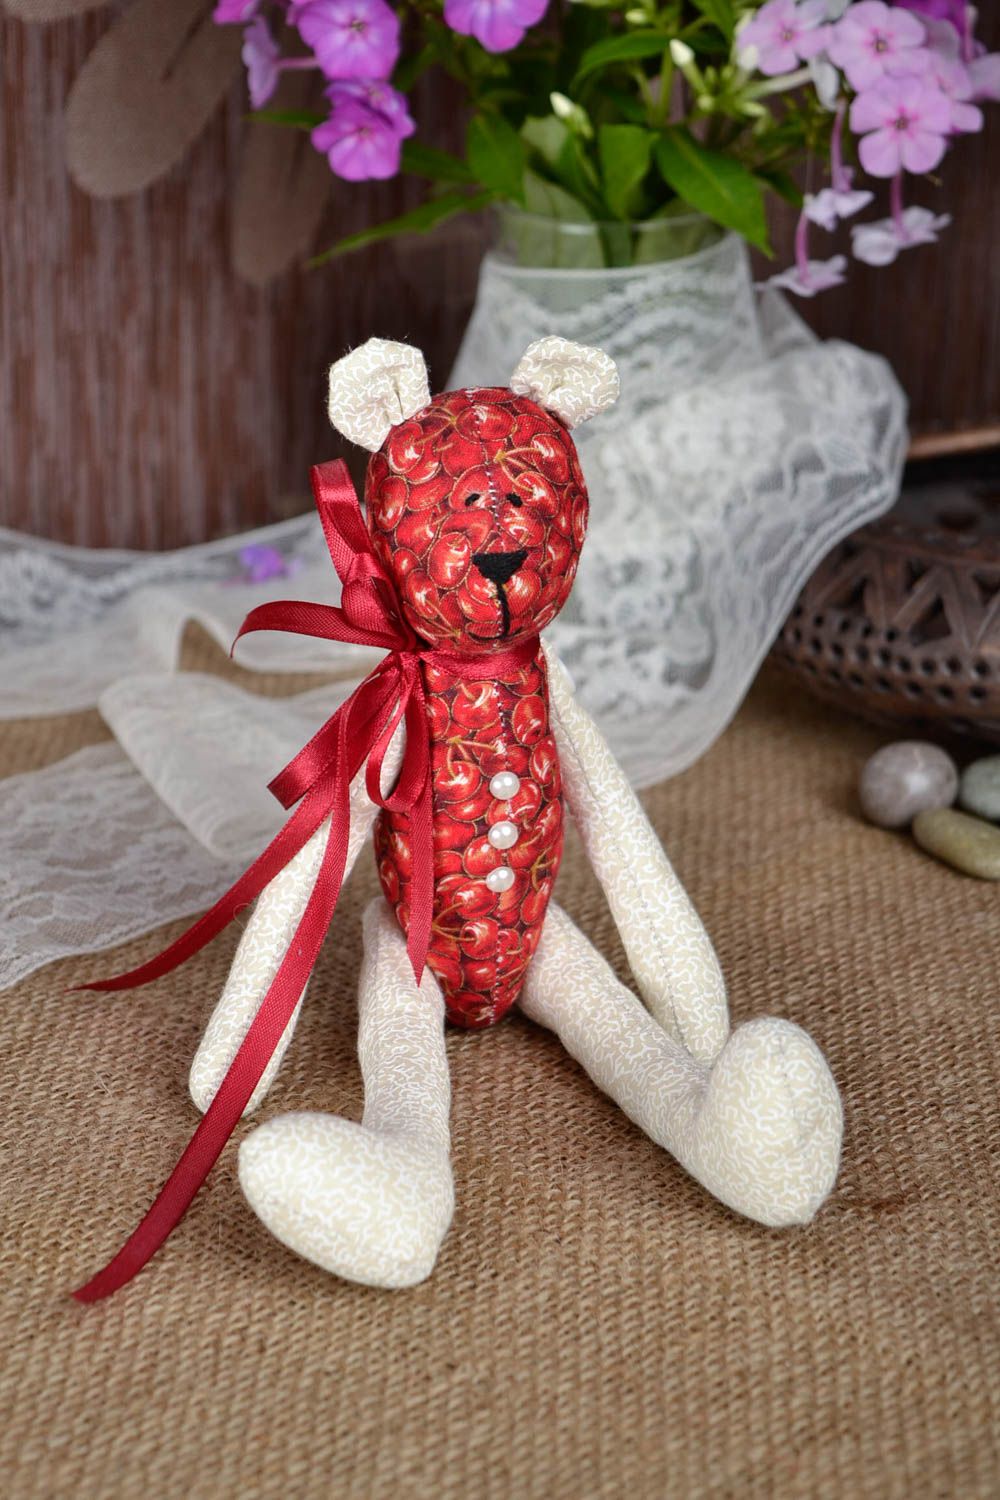 Игрушка мишка из ткани игрушка ручной работы интересный подарок для детей фото 1